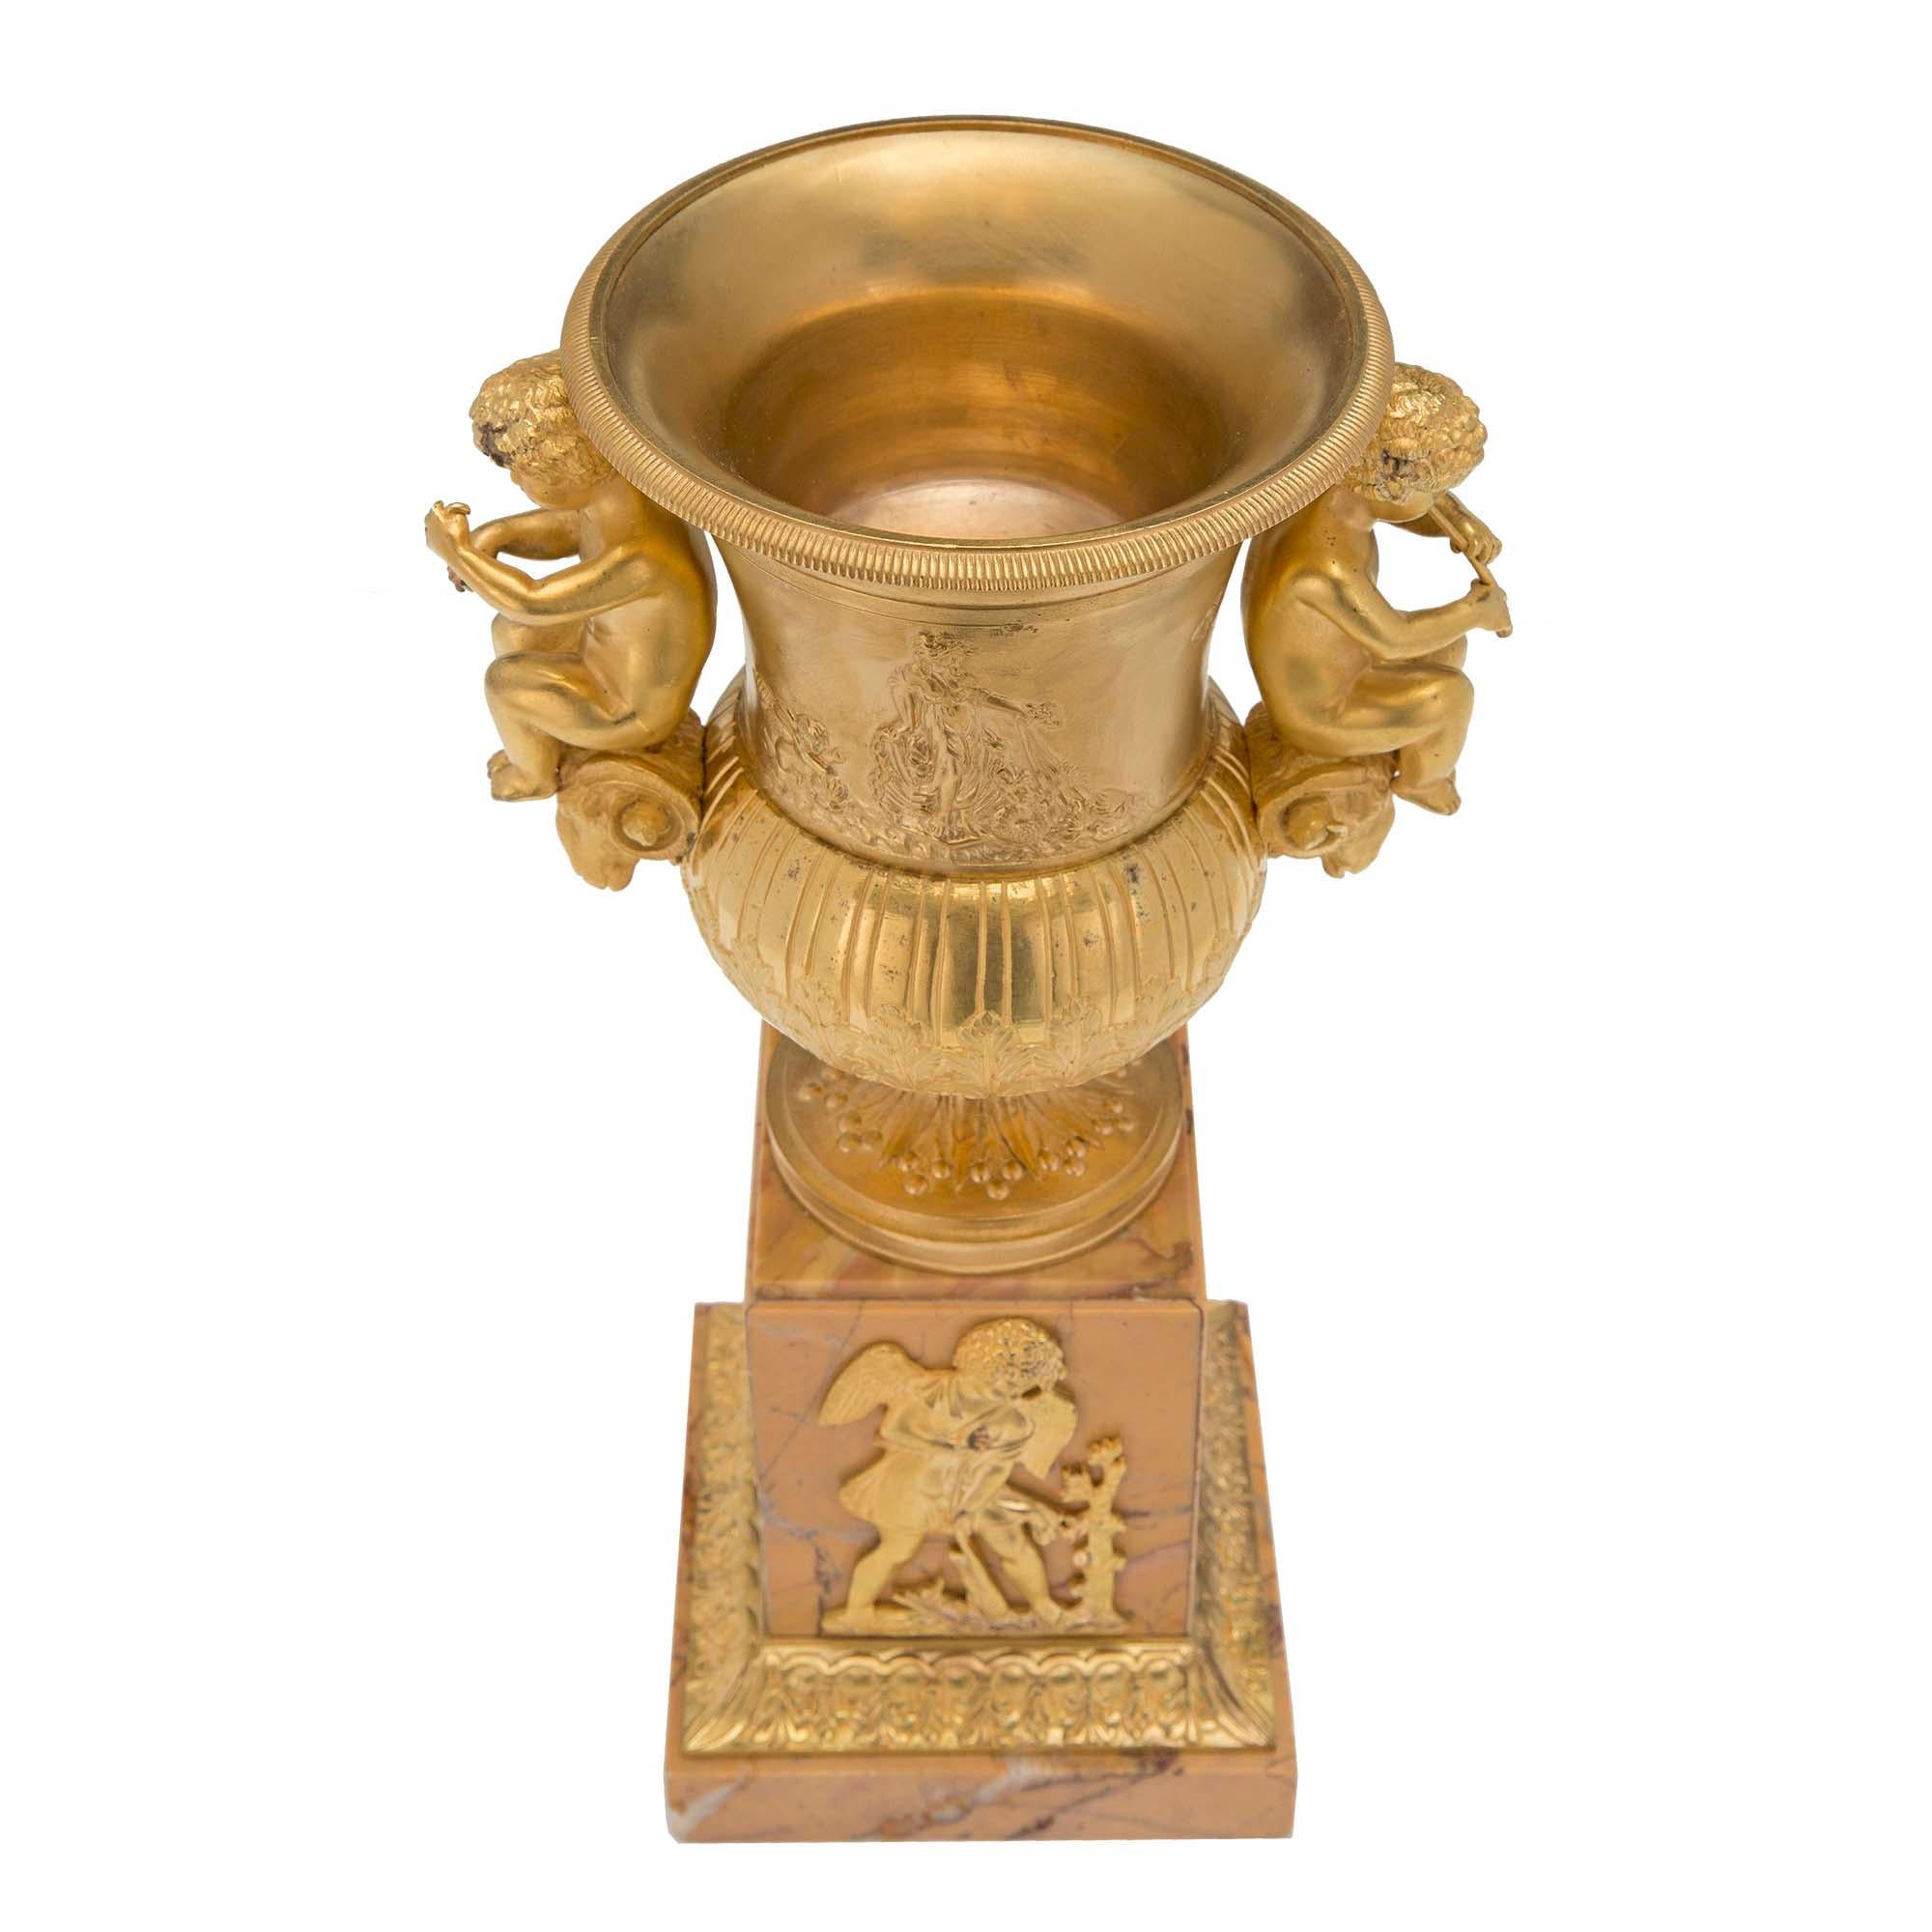 Paire d'urnes néo-classiques françaises du XIXe siècle en bronze doré et marbre de Sienne. Chaque urne repose sur une base carrée avec une bordure feuillagée en bronze doré. La colonne carrée est surmontée de montures en bronze doré finement